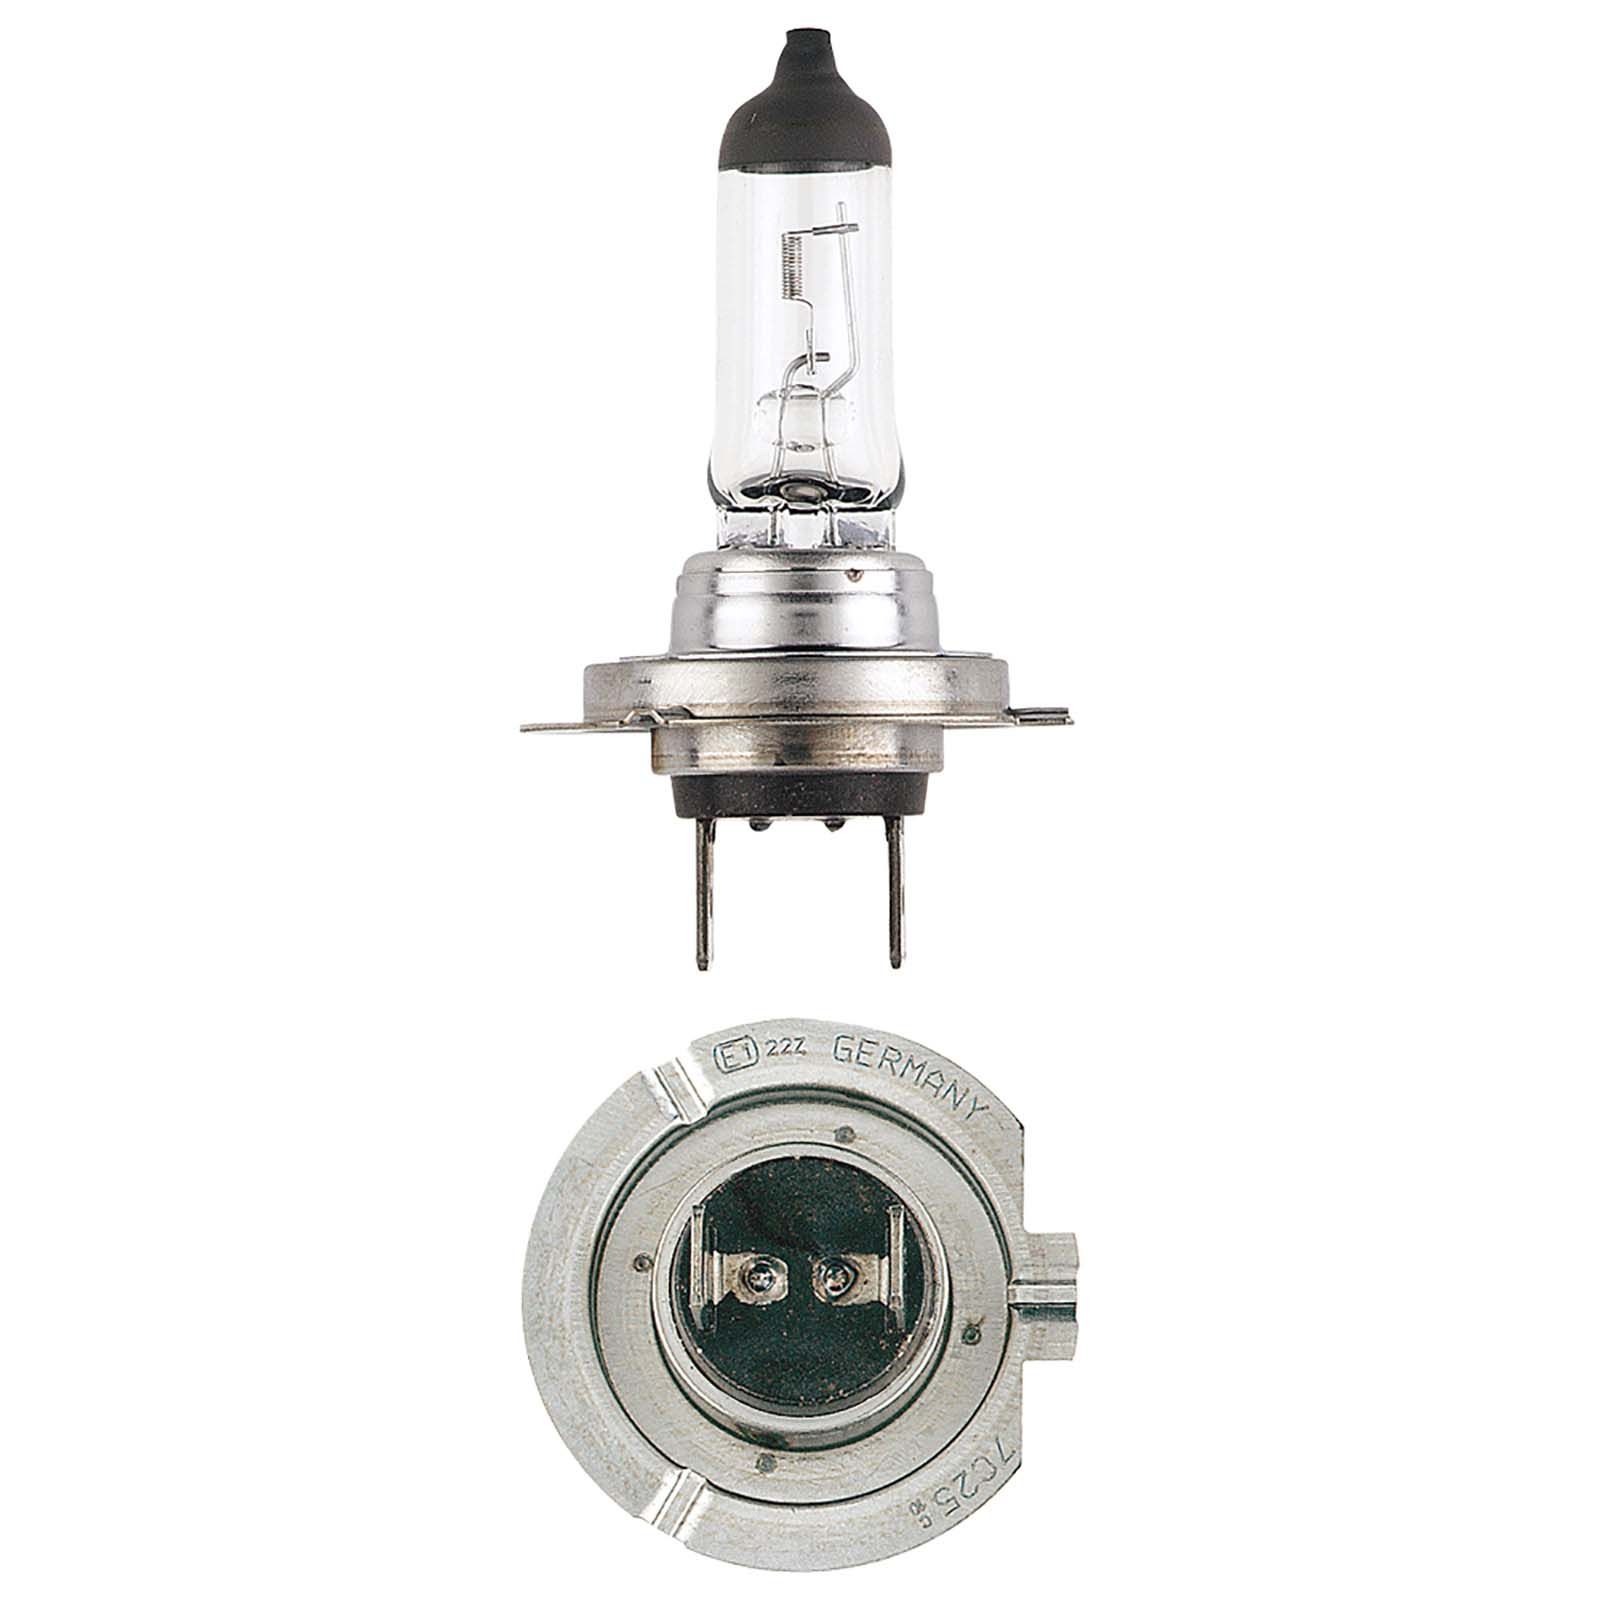 H7 12v 55W Bulb Set - with Fuses, Light Bulbs 12 Volt